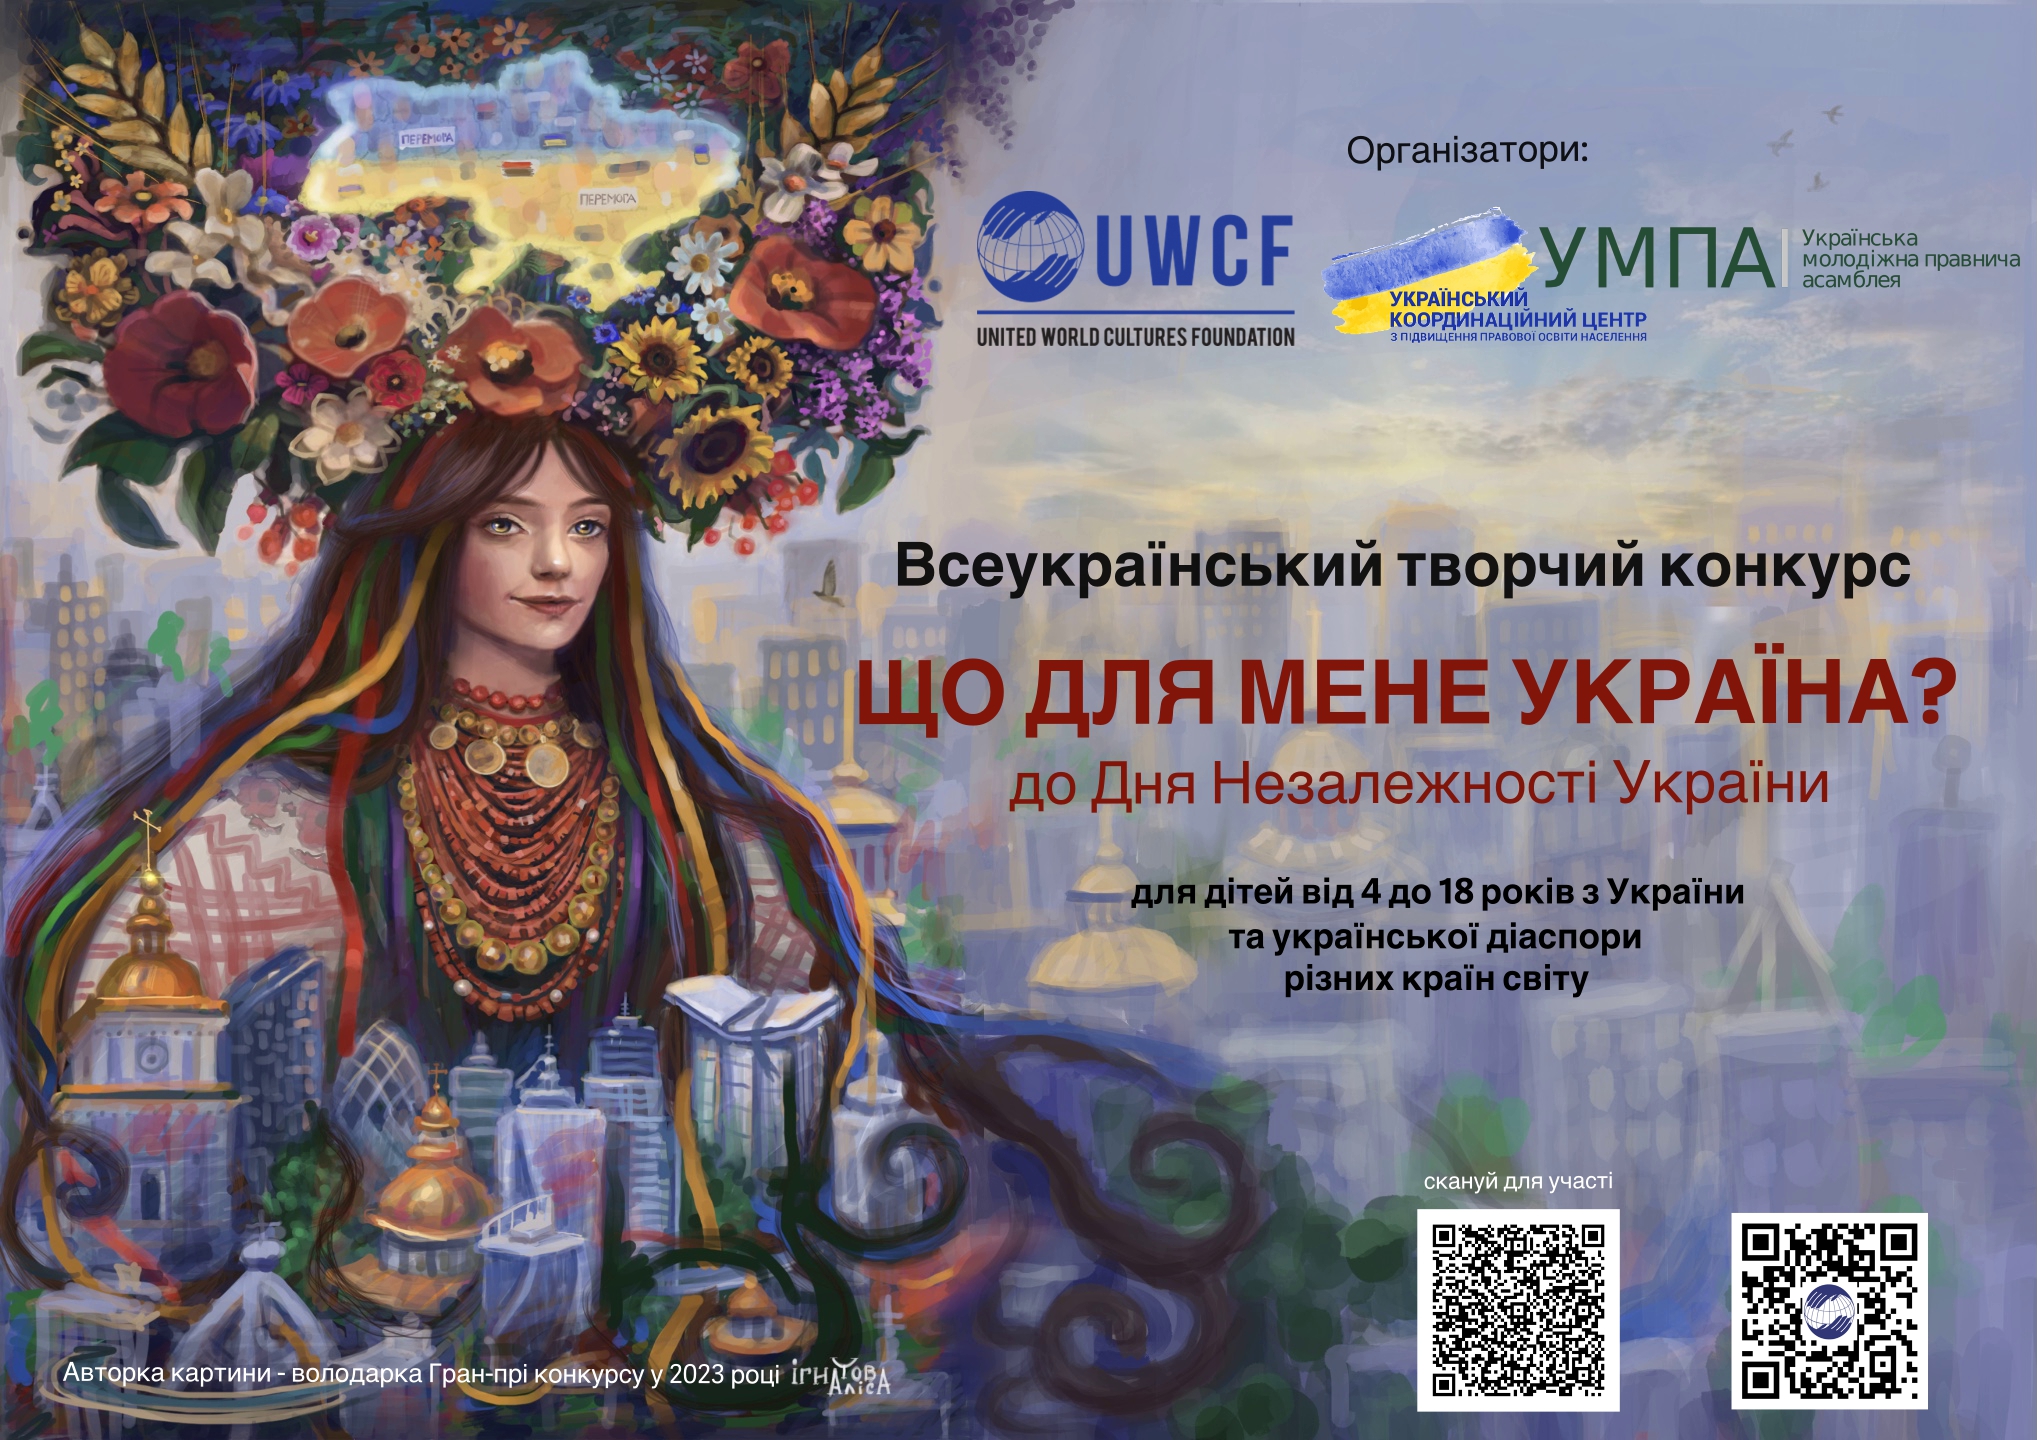 Зображення з інформацією про конкурс "Що для мене Україна?"